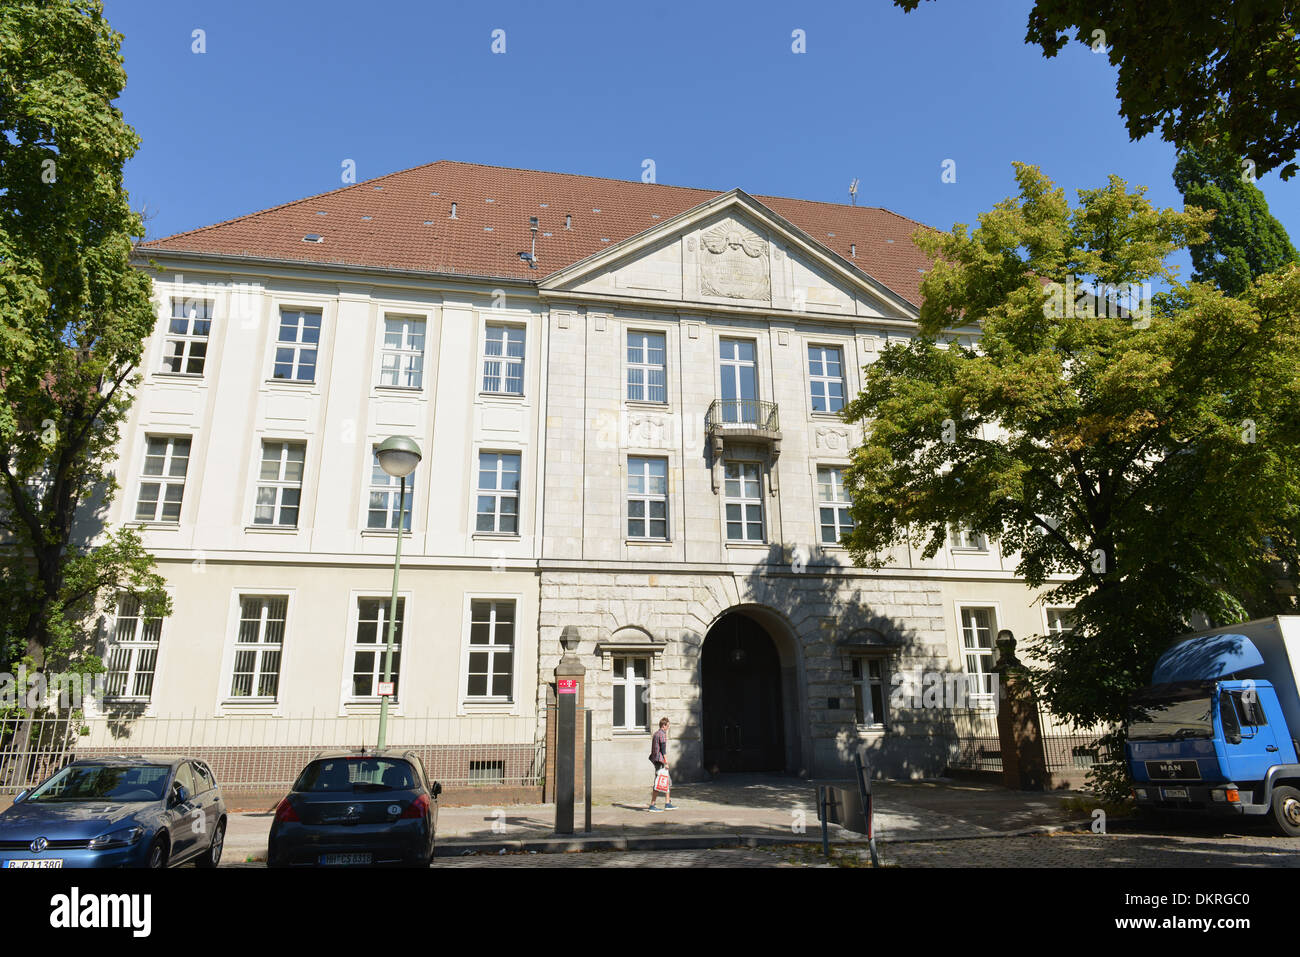 Juedisches Krankenhaus, Heinz-Galinski-Strasse, Wedding, Berlin, Deutschland Stock Photo